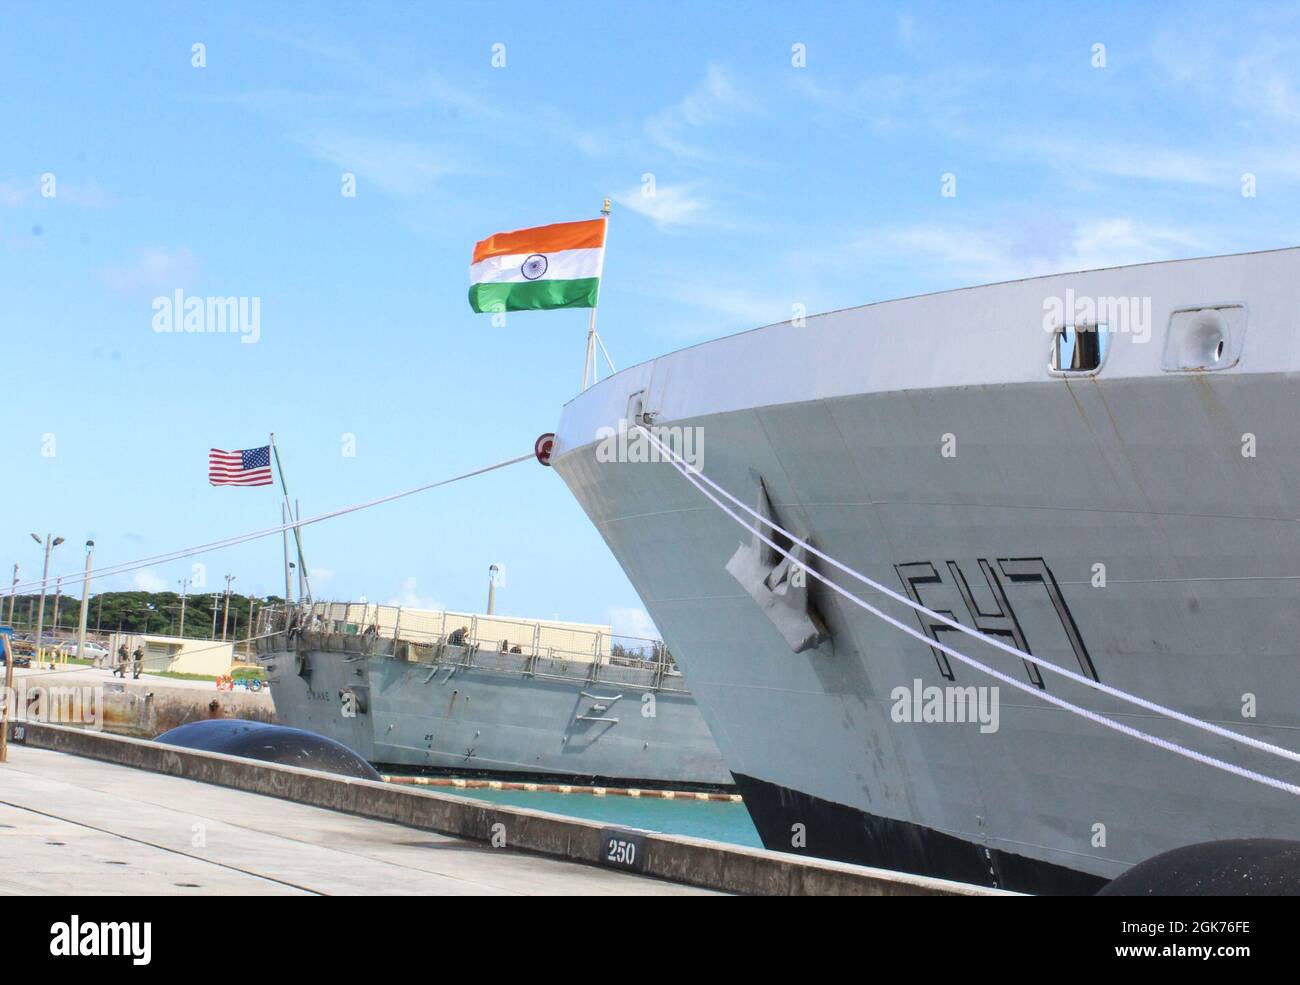 SANTA RITA, Guam (Aug 23, 2021) - die amerikanische Flagge schwingt im Wind vor der USS O'Kane (DDG 77), da die indische Flagge von INS Shivalik (F47) auf dem US Naval Base Guam am am 21. August abgeflogen wird. INS Kadmatt (P29), eine Korvette gegen U-Boot-Kriegsführung, und INS Shivalik (F47), eine Shivalik-Klasse-Tarnkappenfrigate, kamen am 21. August auf dem US-Marinestützpunkt Guam an. Die beiden Schiffe sollen an der jährlichen gemeinsamen Marineübung Malabar 2021 teilnehmen. Malabar 2021 ist ein Beispiel für die dauerhafte Partnerschaft zwischen australischen, indischen, japanischen und amerikanischen Seestreitkräften, die routinemäßig zusammenarbeiten Stockfoto